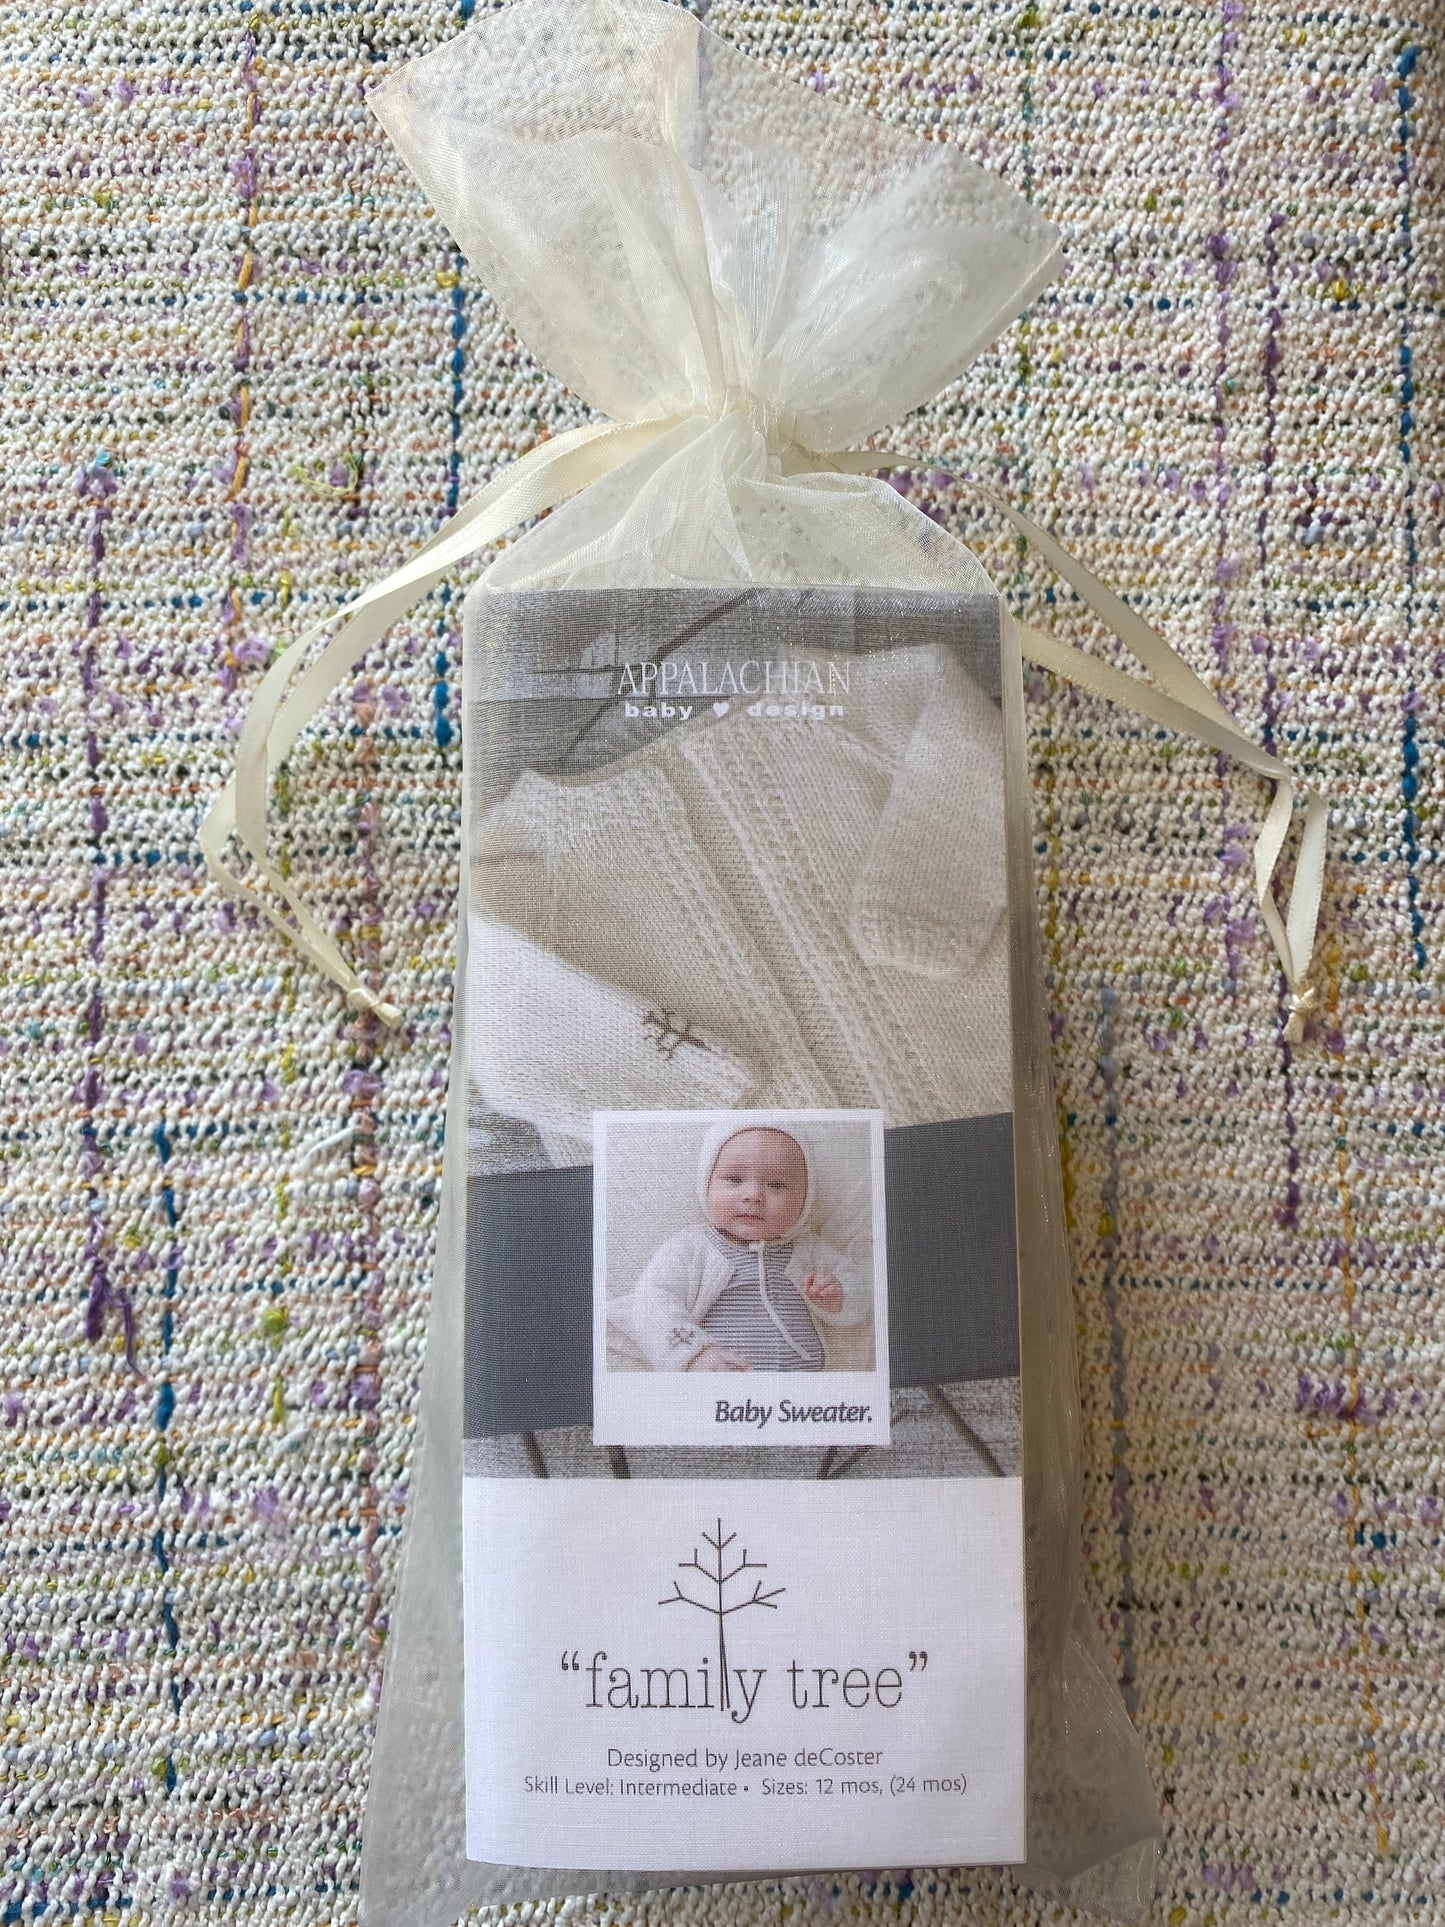 Appalachian Baby - Family Tree Knit Baby Cardigan Kit